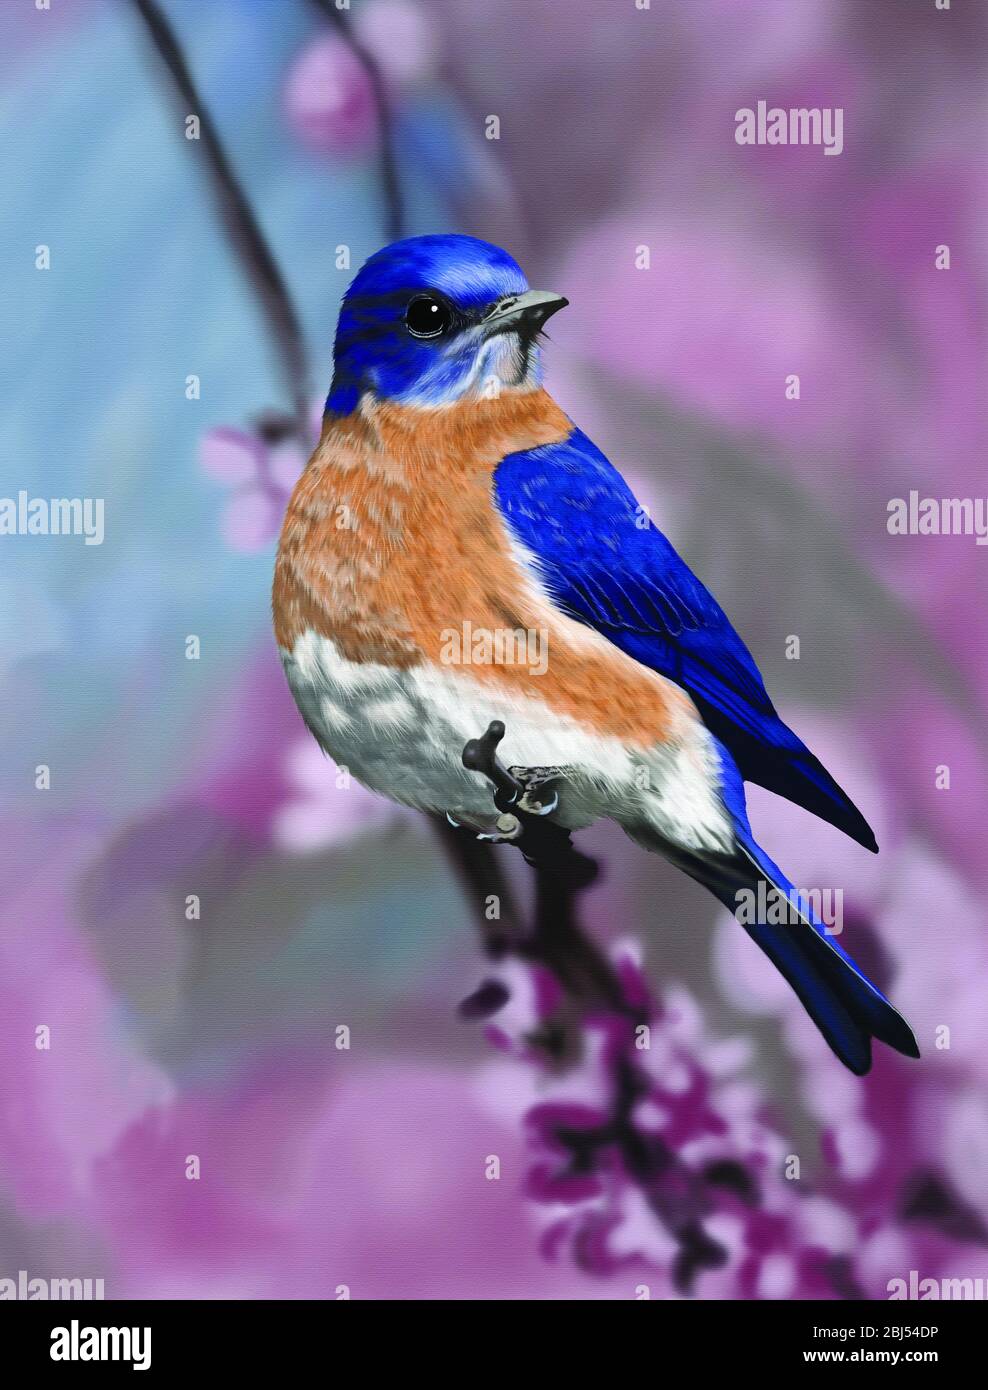 Bon petit oiseau bleu. Les oiseaux bleus sont un groupe d'oiseaux de taille moyenne, surtout insectivores ou omnivores, appartenant au genre Sialia de la famille des espèces de muguet. Banque D'Images